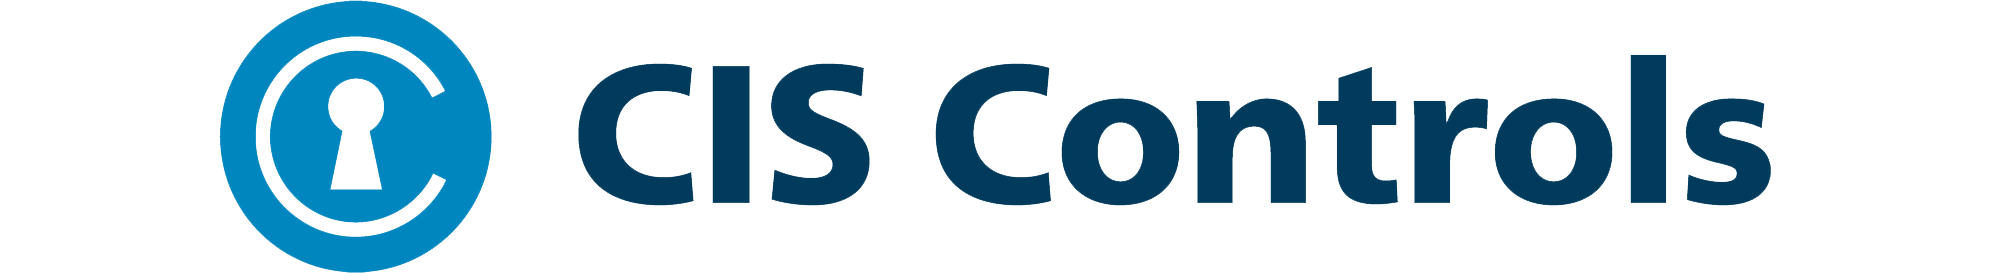 CIS controls logo